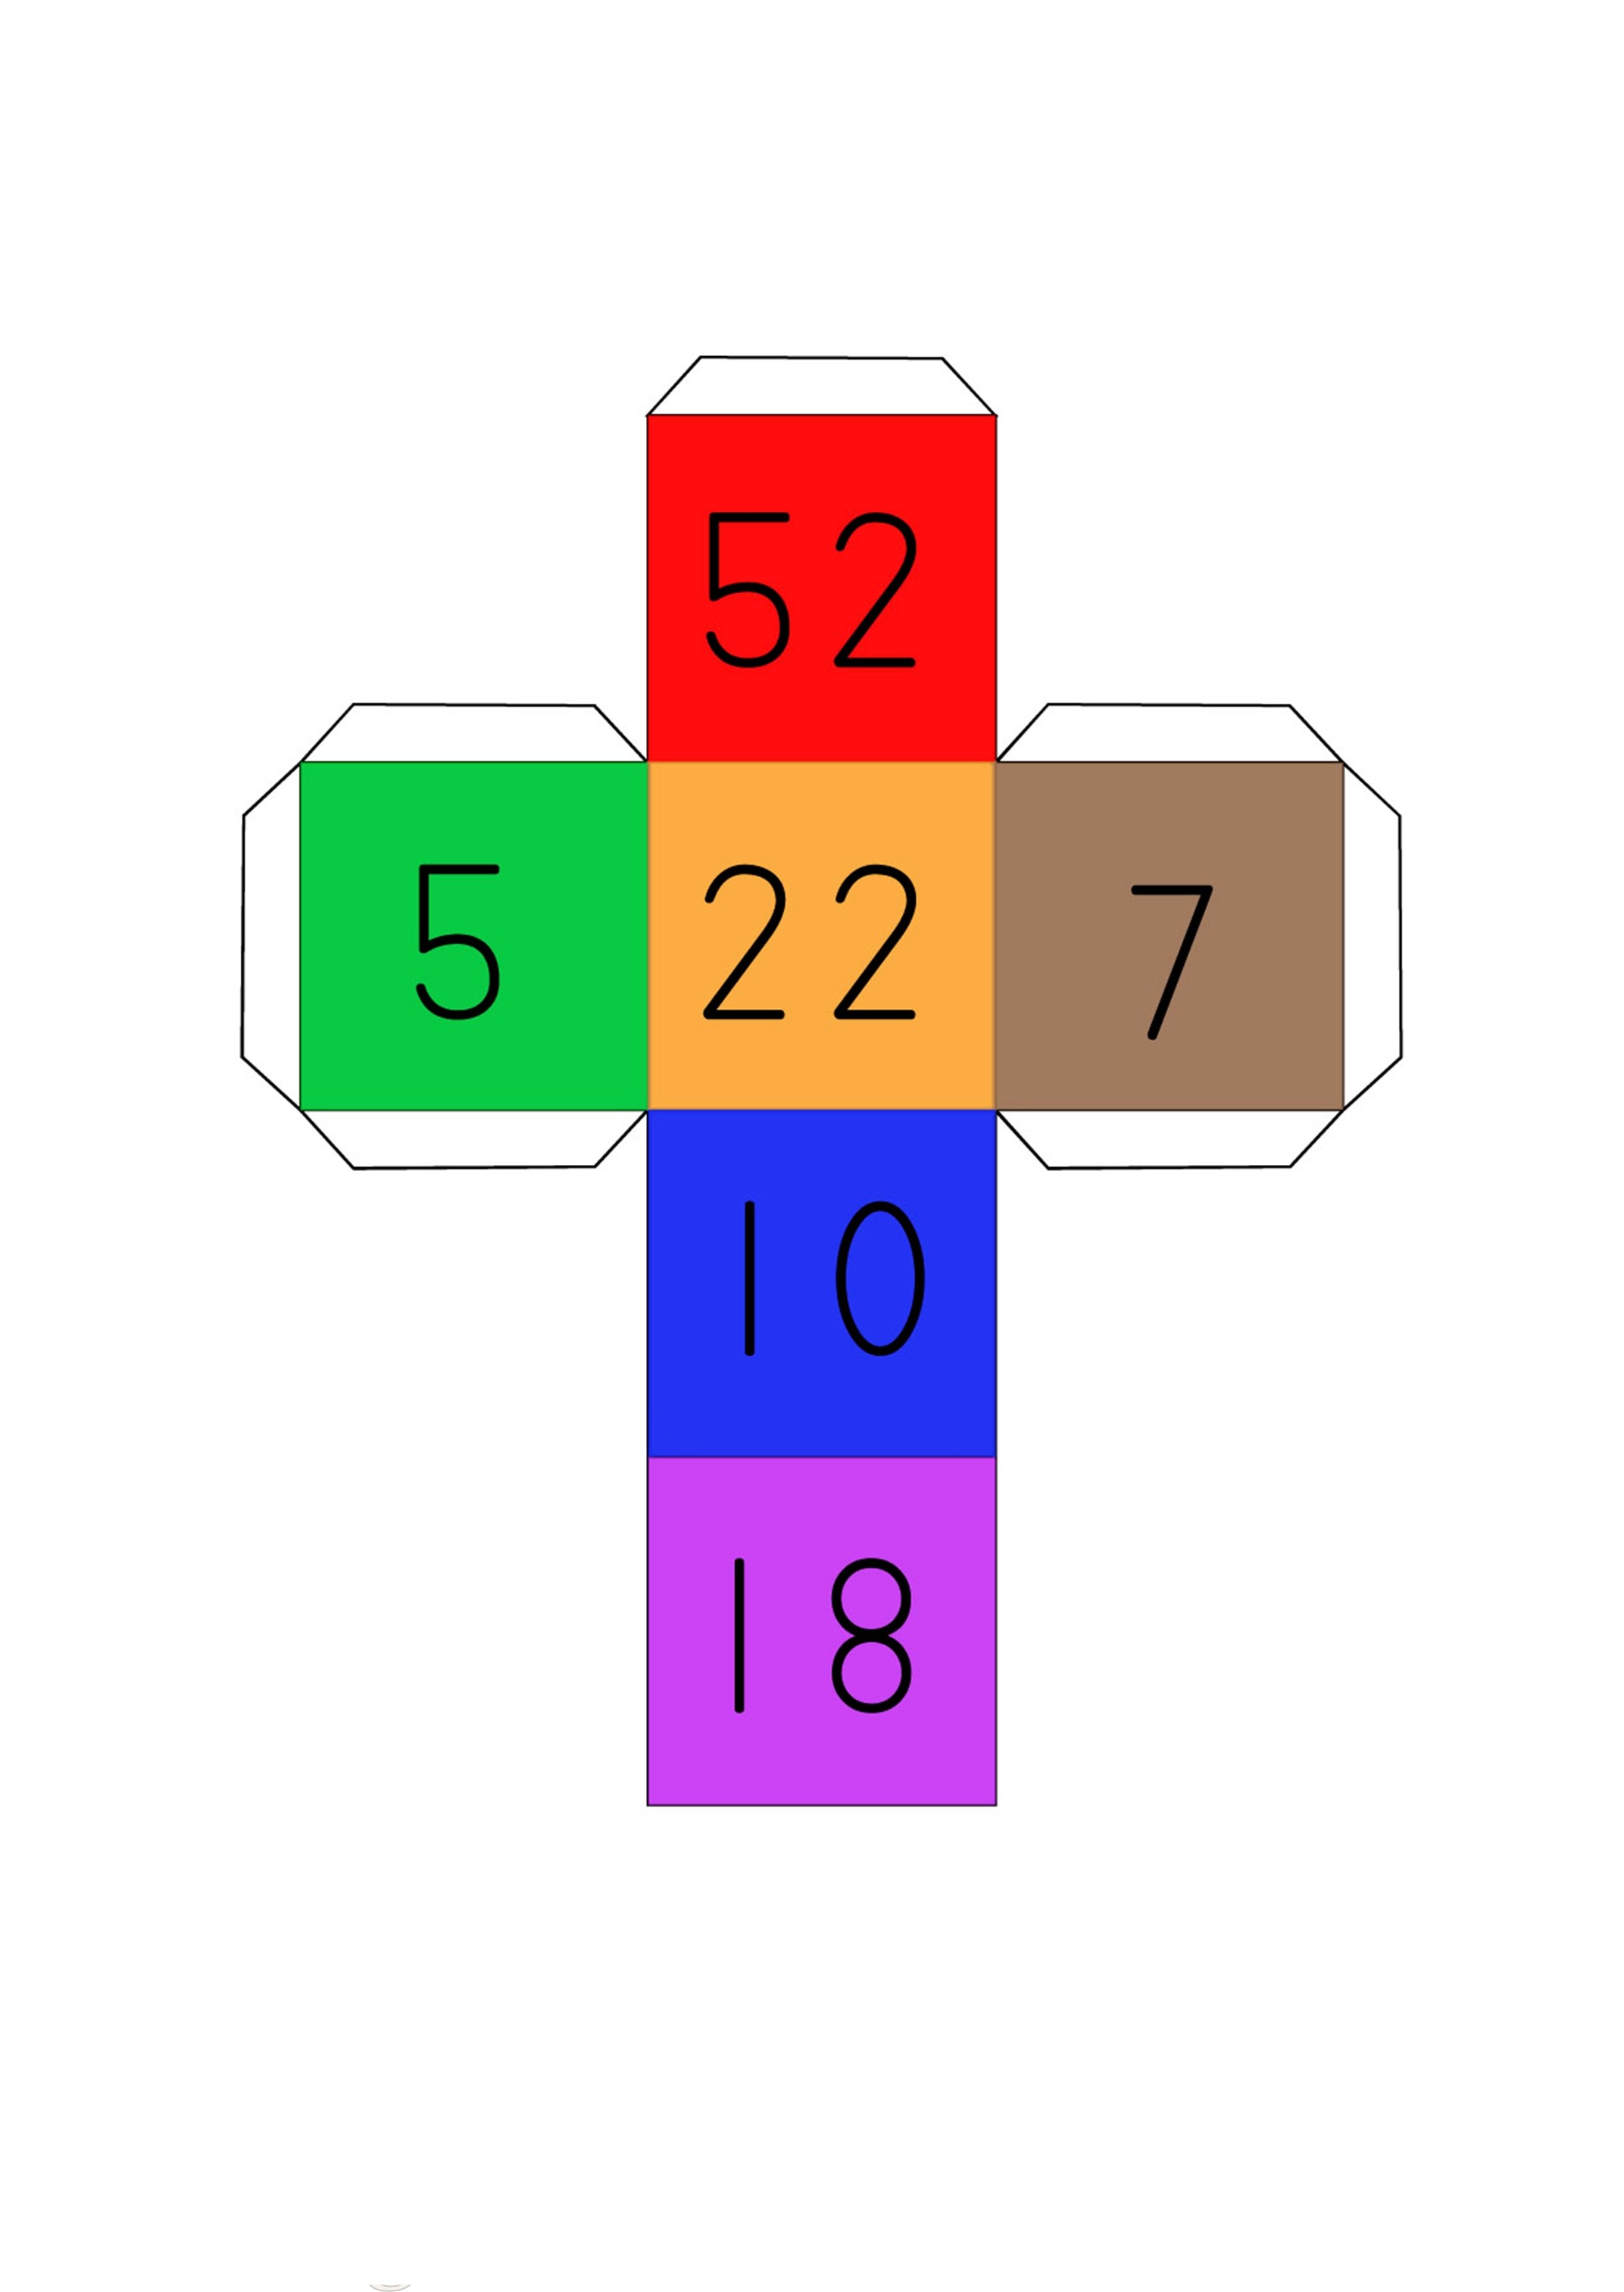 Matemaatikaga seotud mängud Cubico15